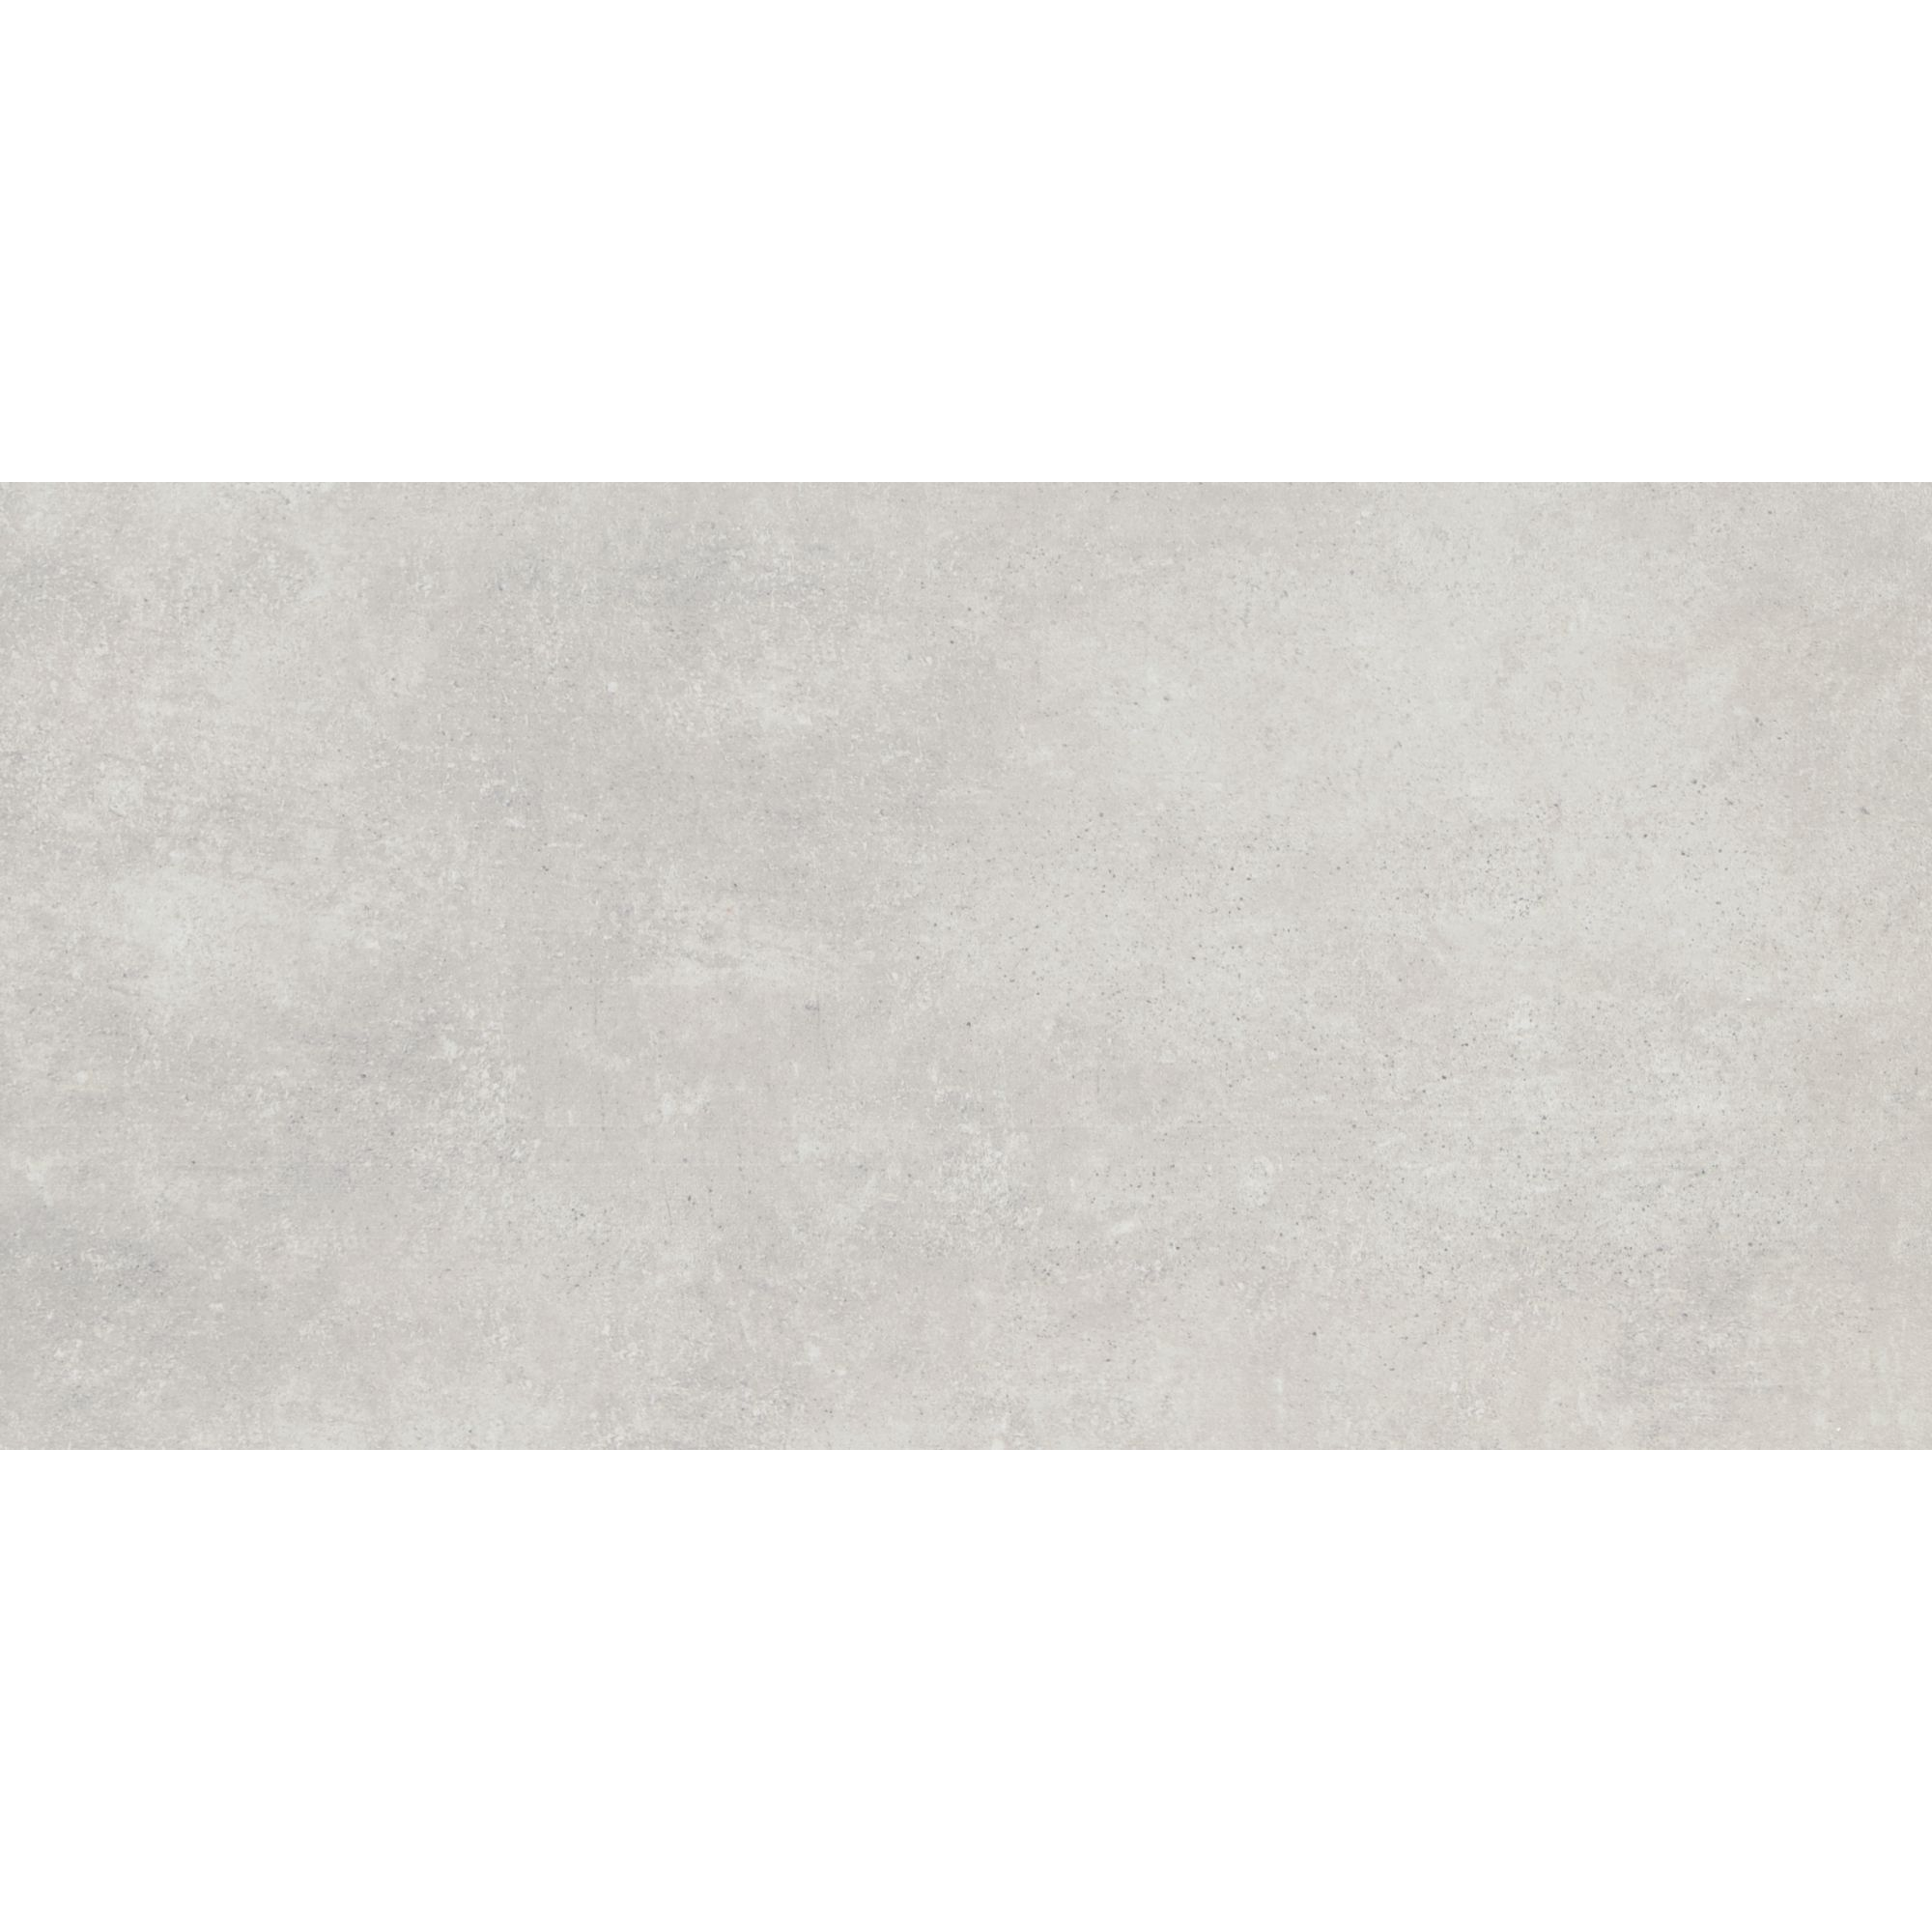 Bodenfliese 'Beton Grigio' Feinsteinzeug 30,5 x 61 cm grau + product picture